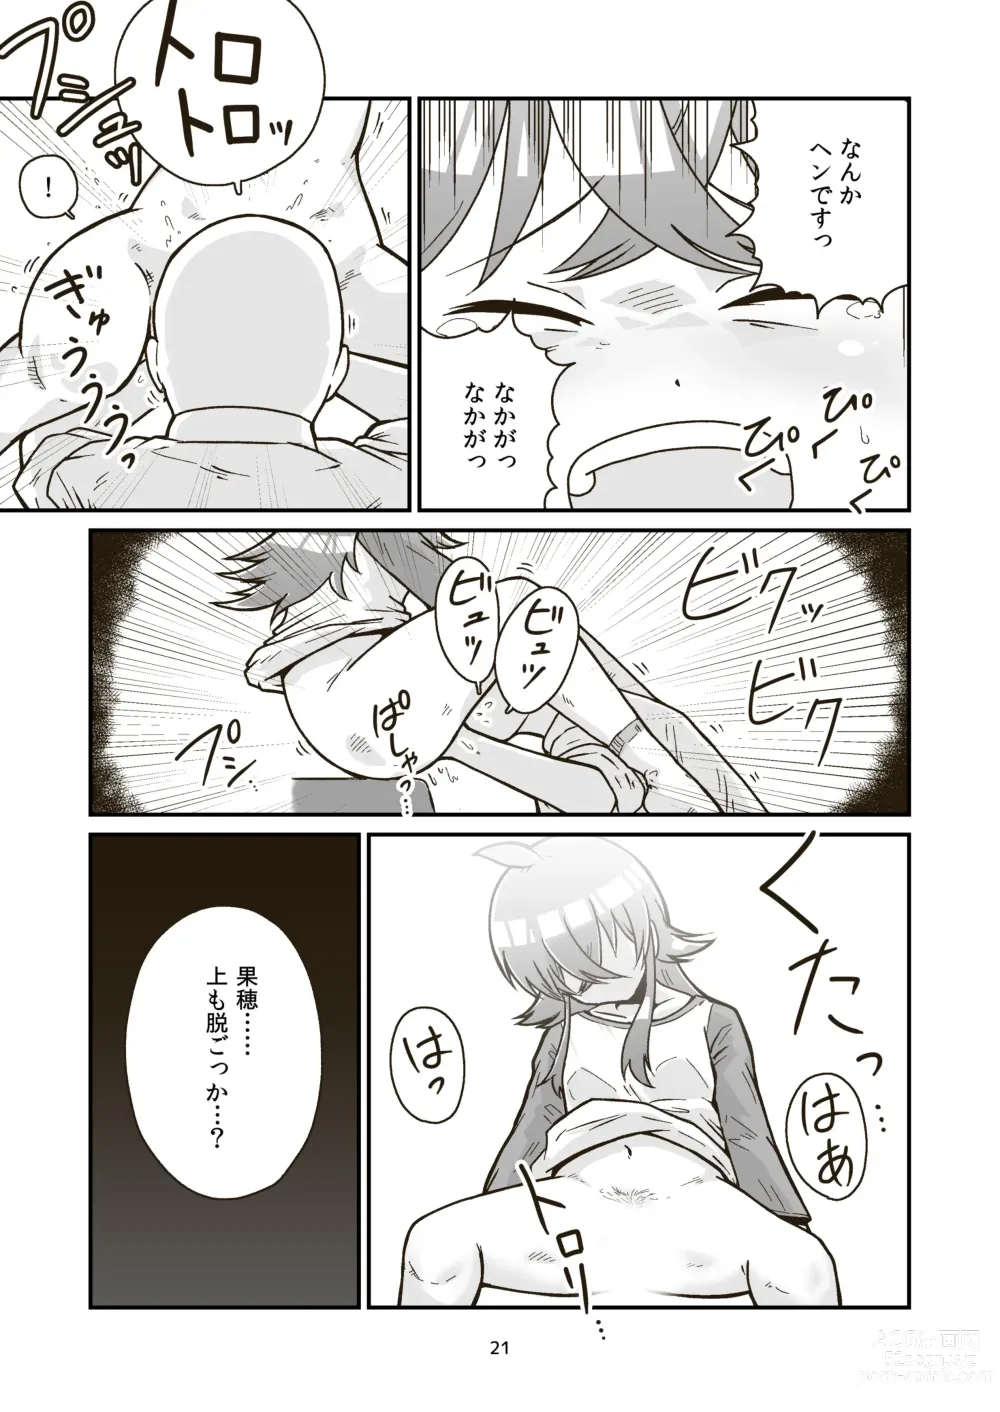 Page 20 of doujinshi Nichiyou Asa kara Climax